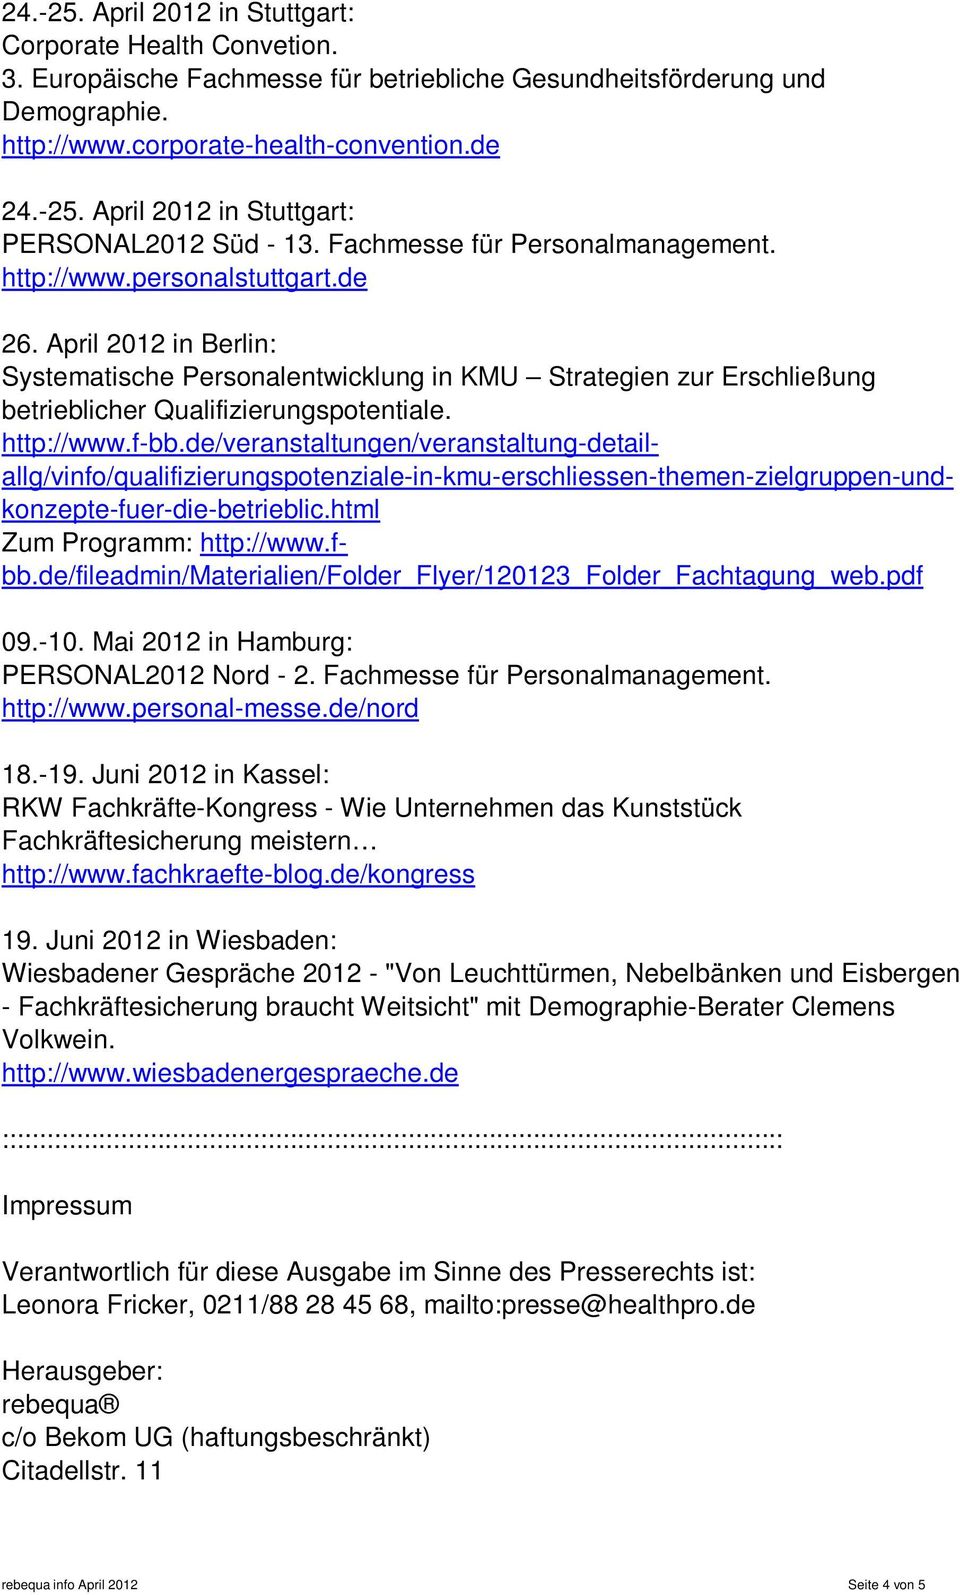 April 2012 in Berlin: Systematische Personalentwicklung in KMU Strategien zur Erschließung betrieblicher Qualifizierungspotentiale. http://www.f-bb.